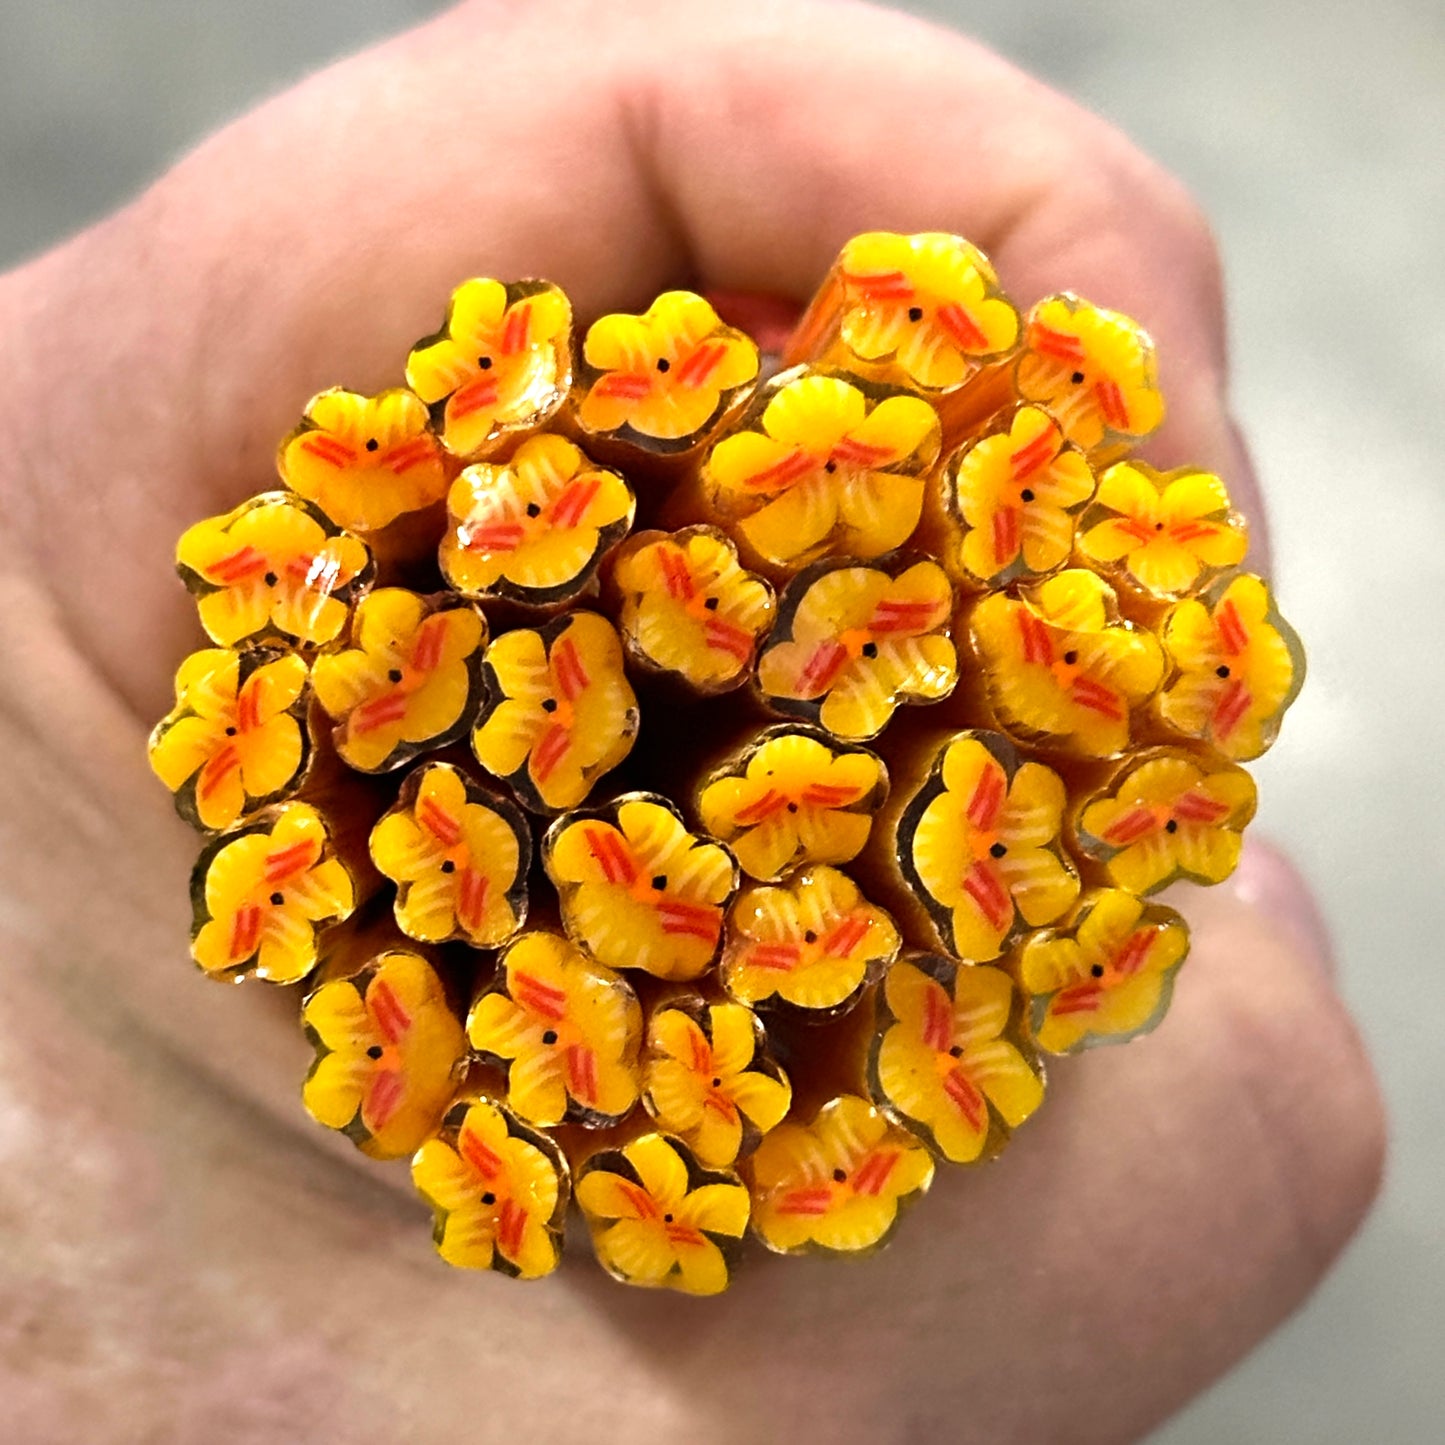 Yellow Pansies, 1.5oz, coe 90 Murrini